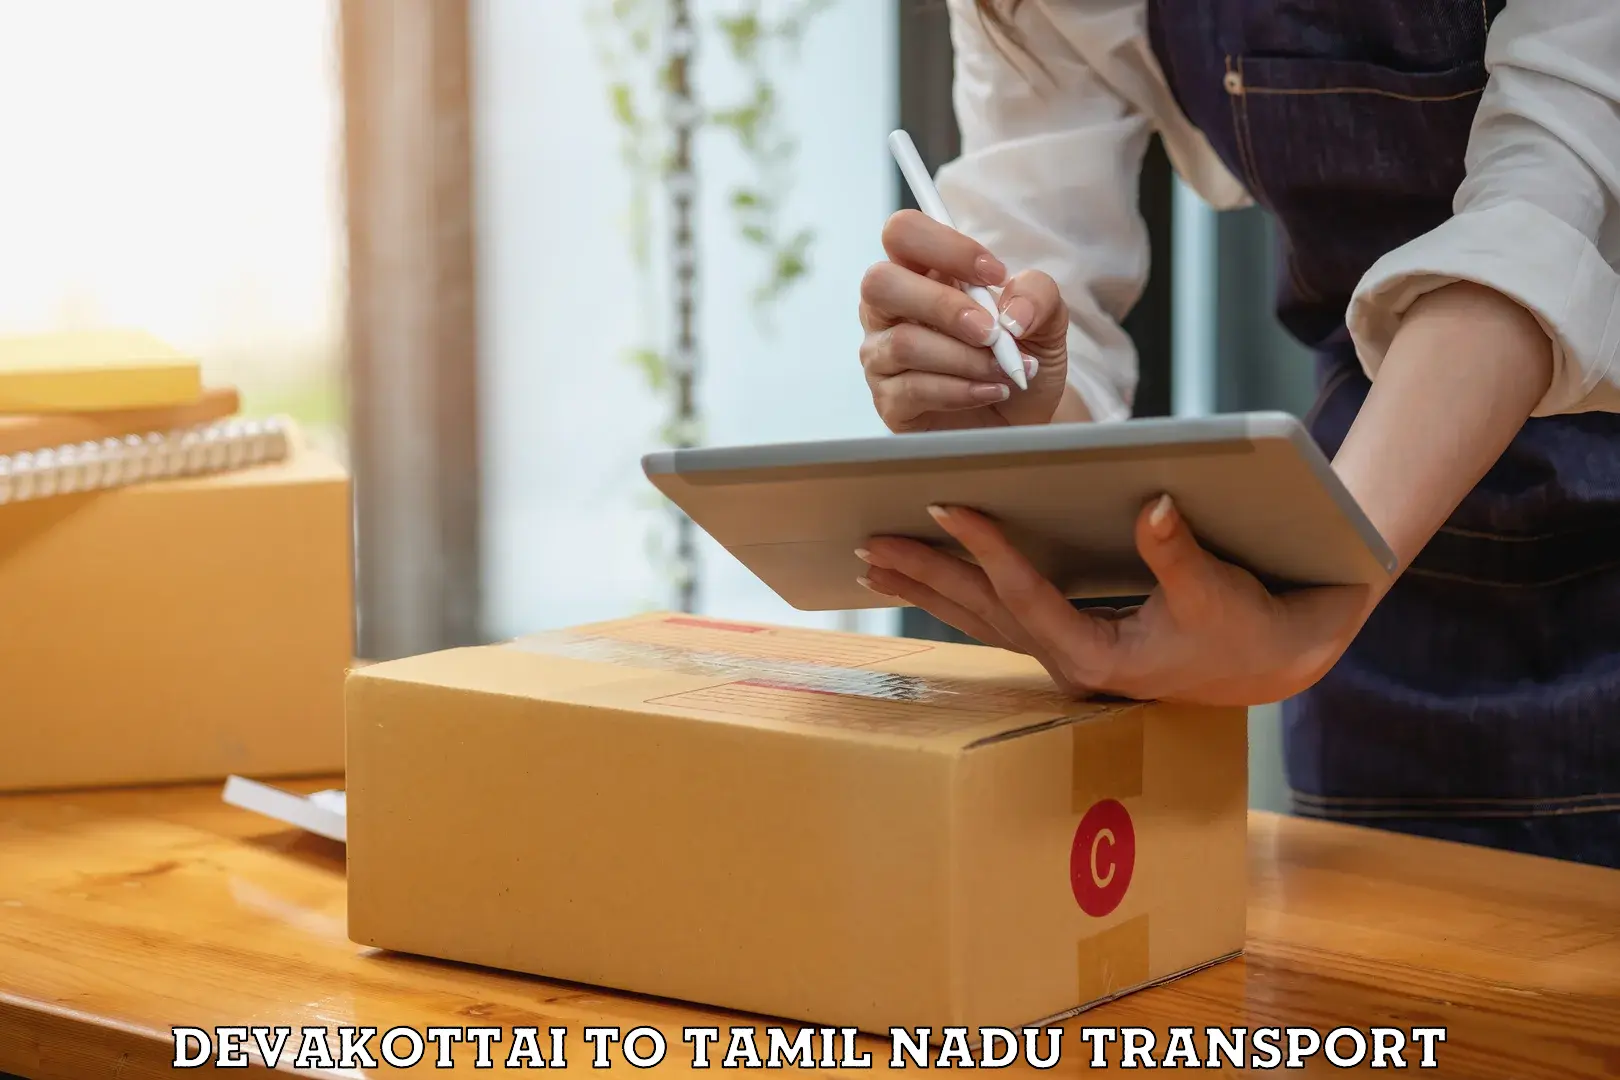 Package delivery services Devakottai to Viluppuram